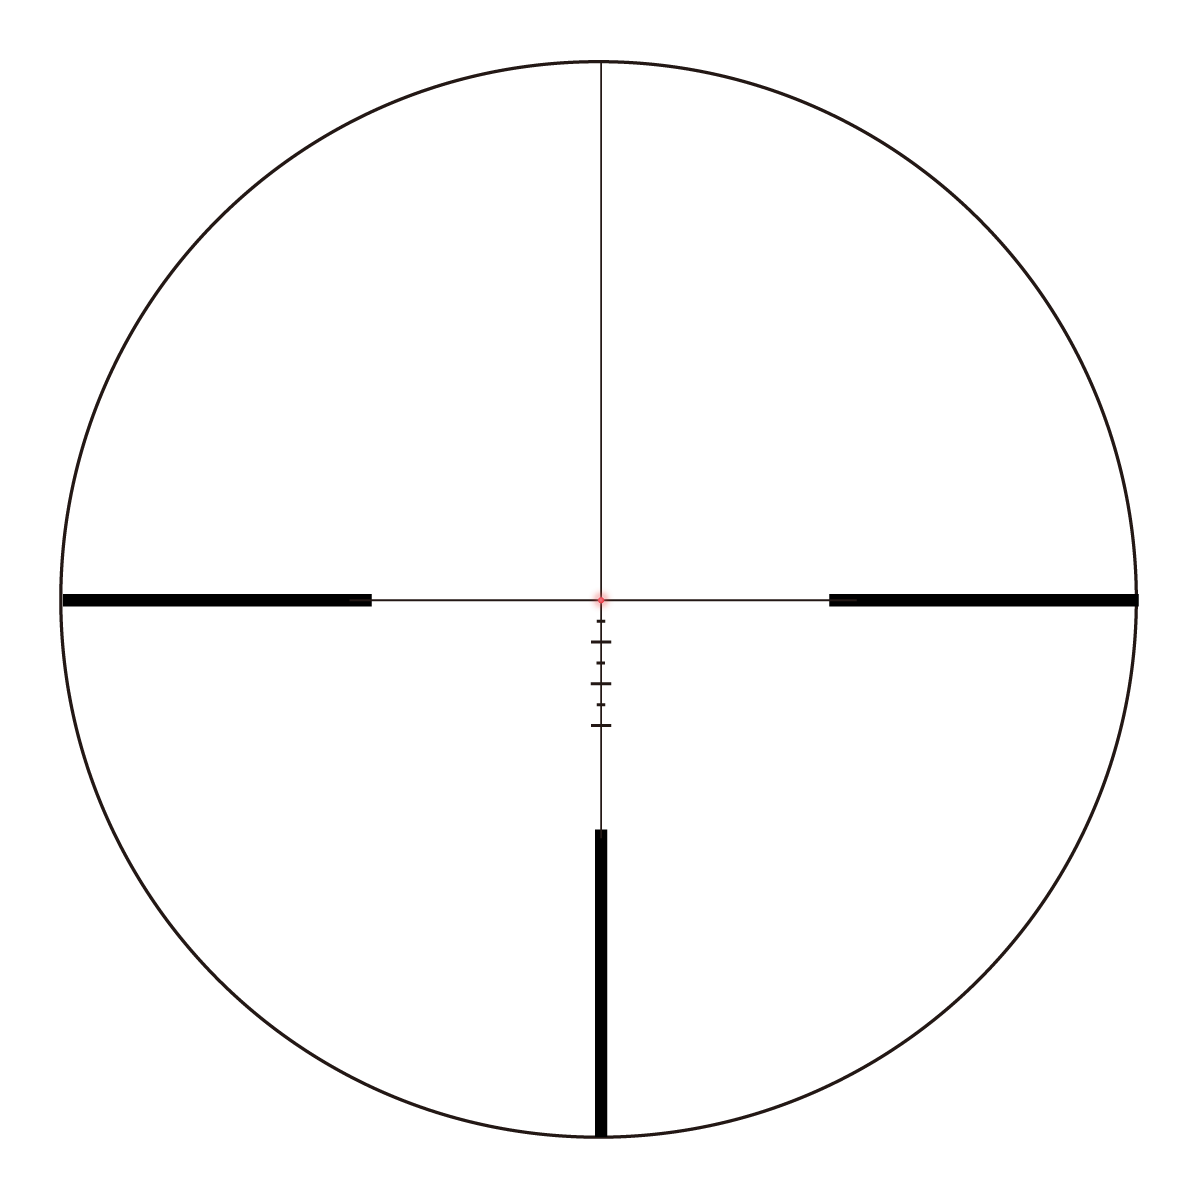 Continental 1-6x24i Fiber Tactical Riflescope reticle